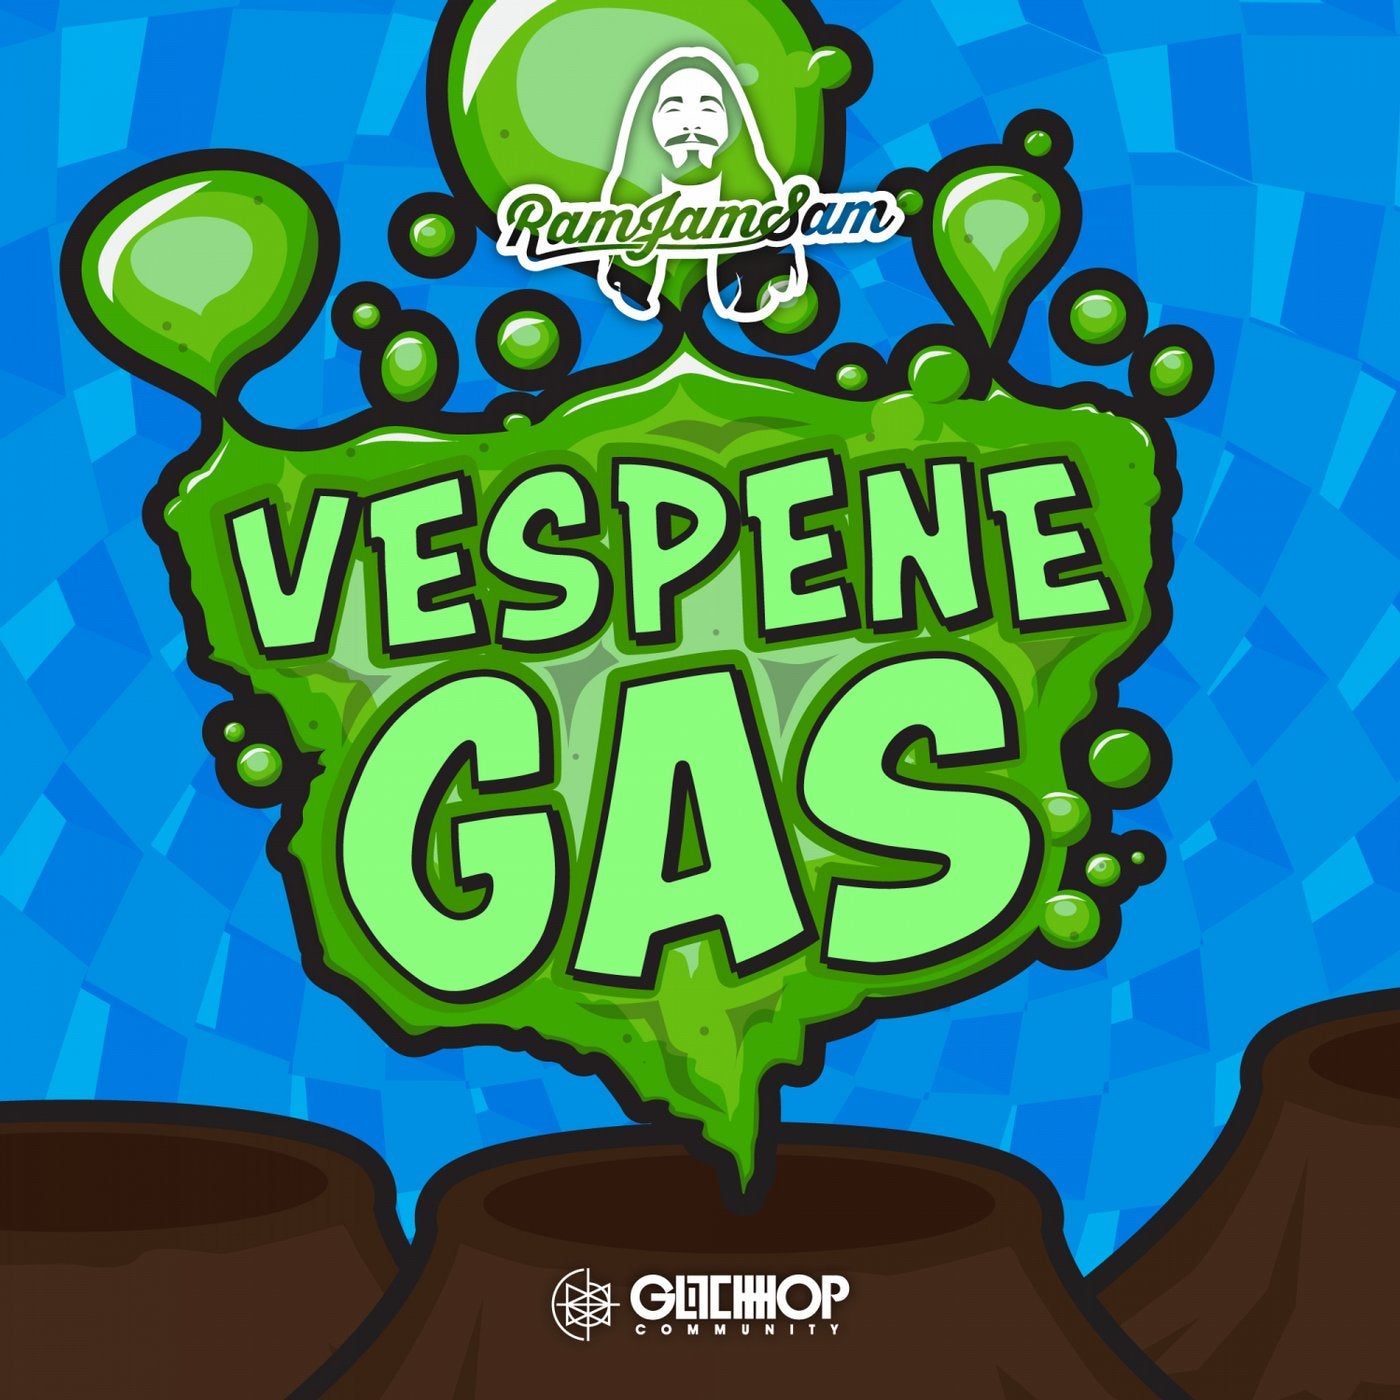 Vespene Gas